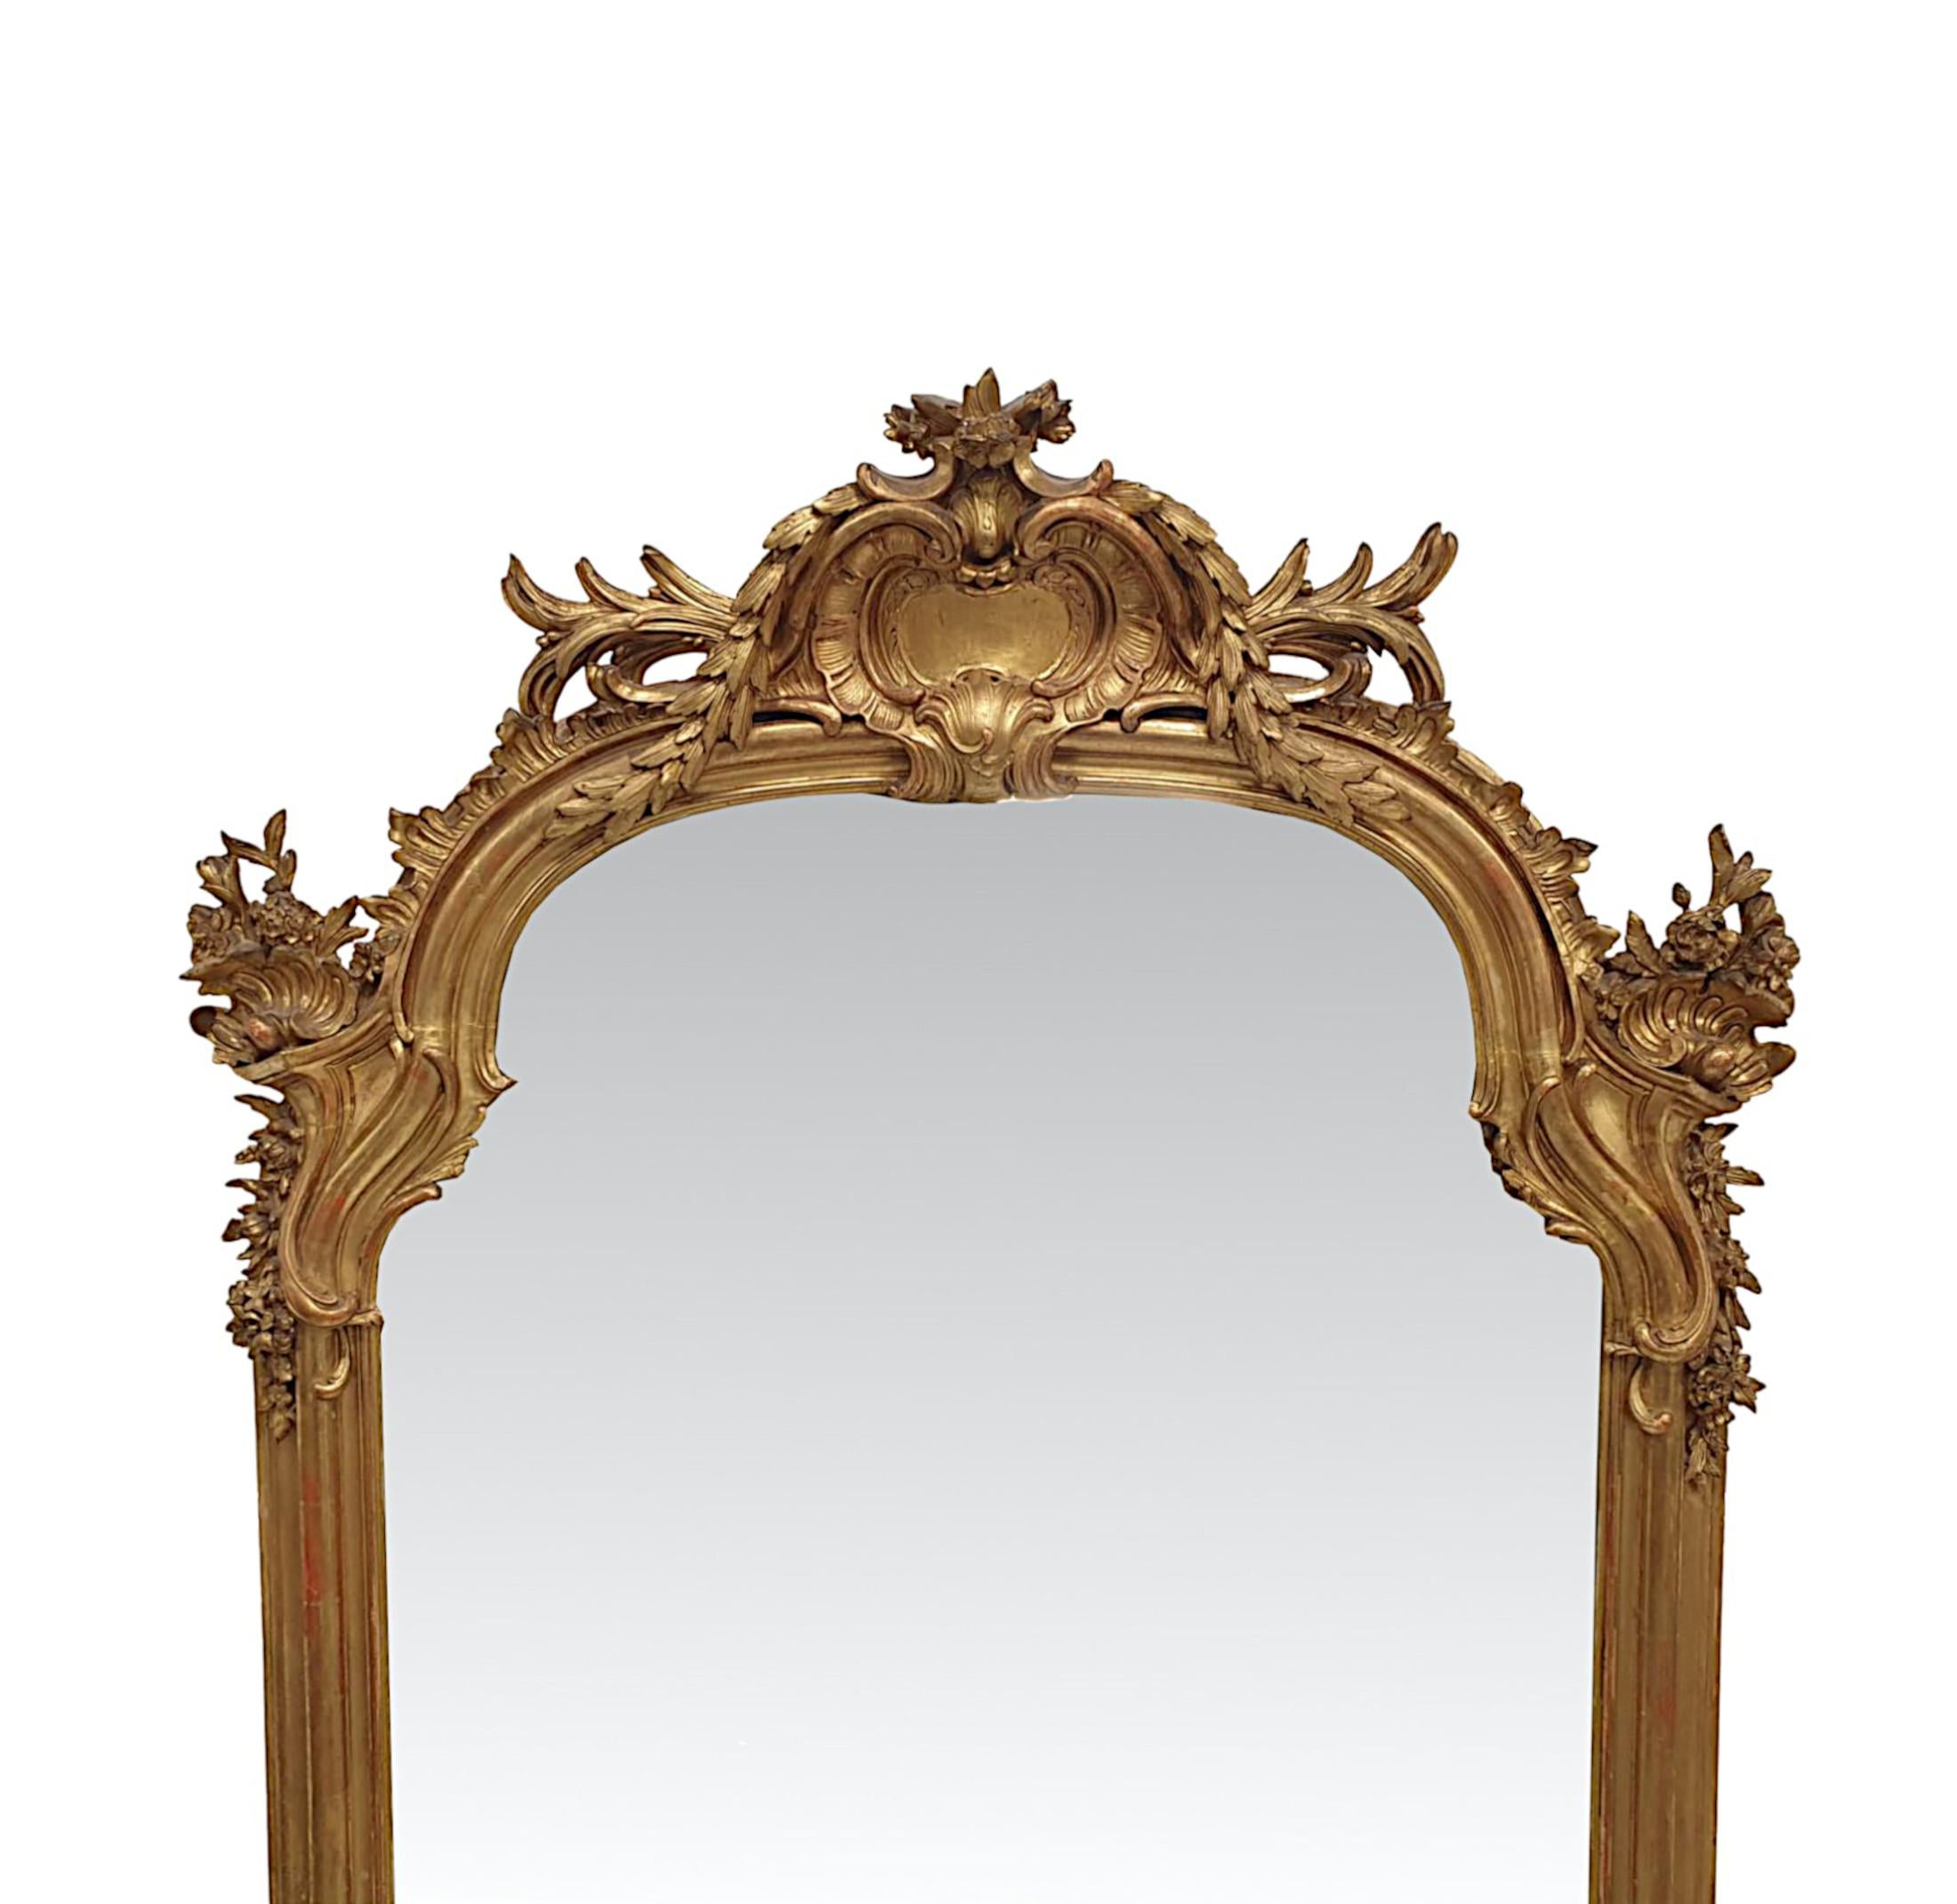 Ein fabelhaftes 19. Jahrhundert vergoldet Halle oder overmantel Spiegel von außergewöhnlicher Qualität und großen Proportionen.  Die geformte Spiegelglasplatte ist in einen fein handgeschnitzten, profilierten und geriffelten Rahmen aus vergoldetem